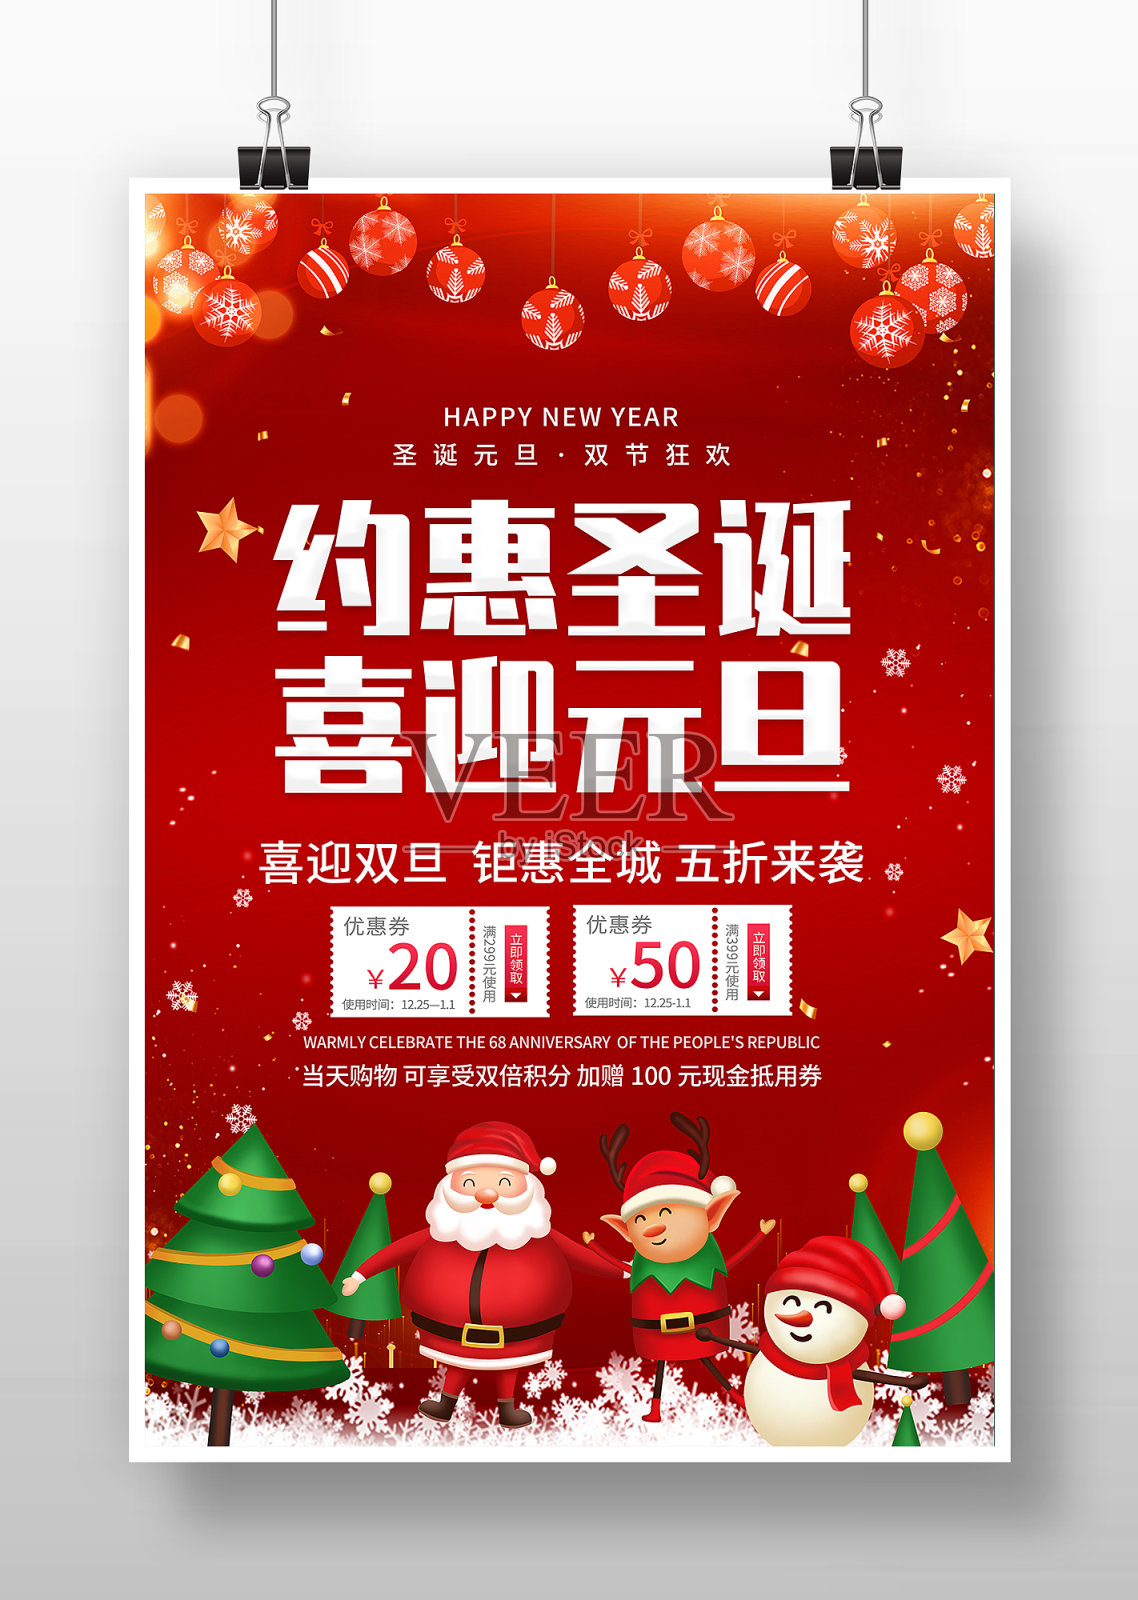 圣诞元旦双旦促销海报设计设计模板素材